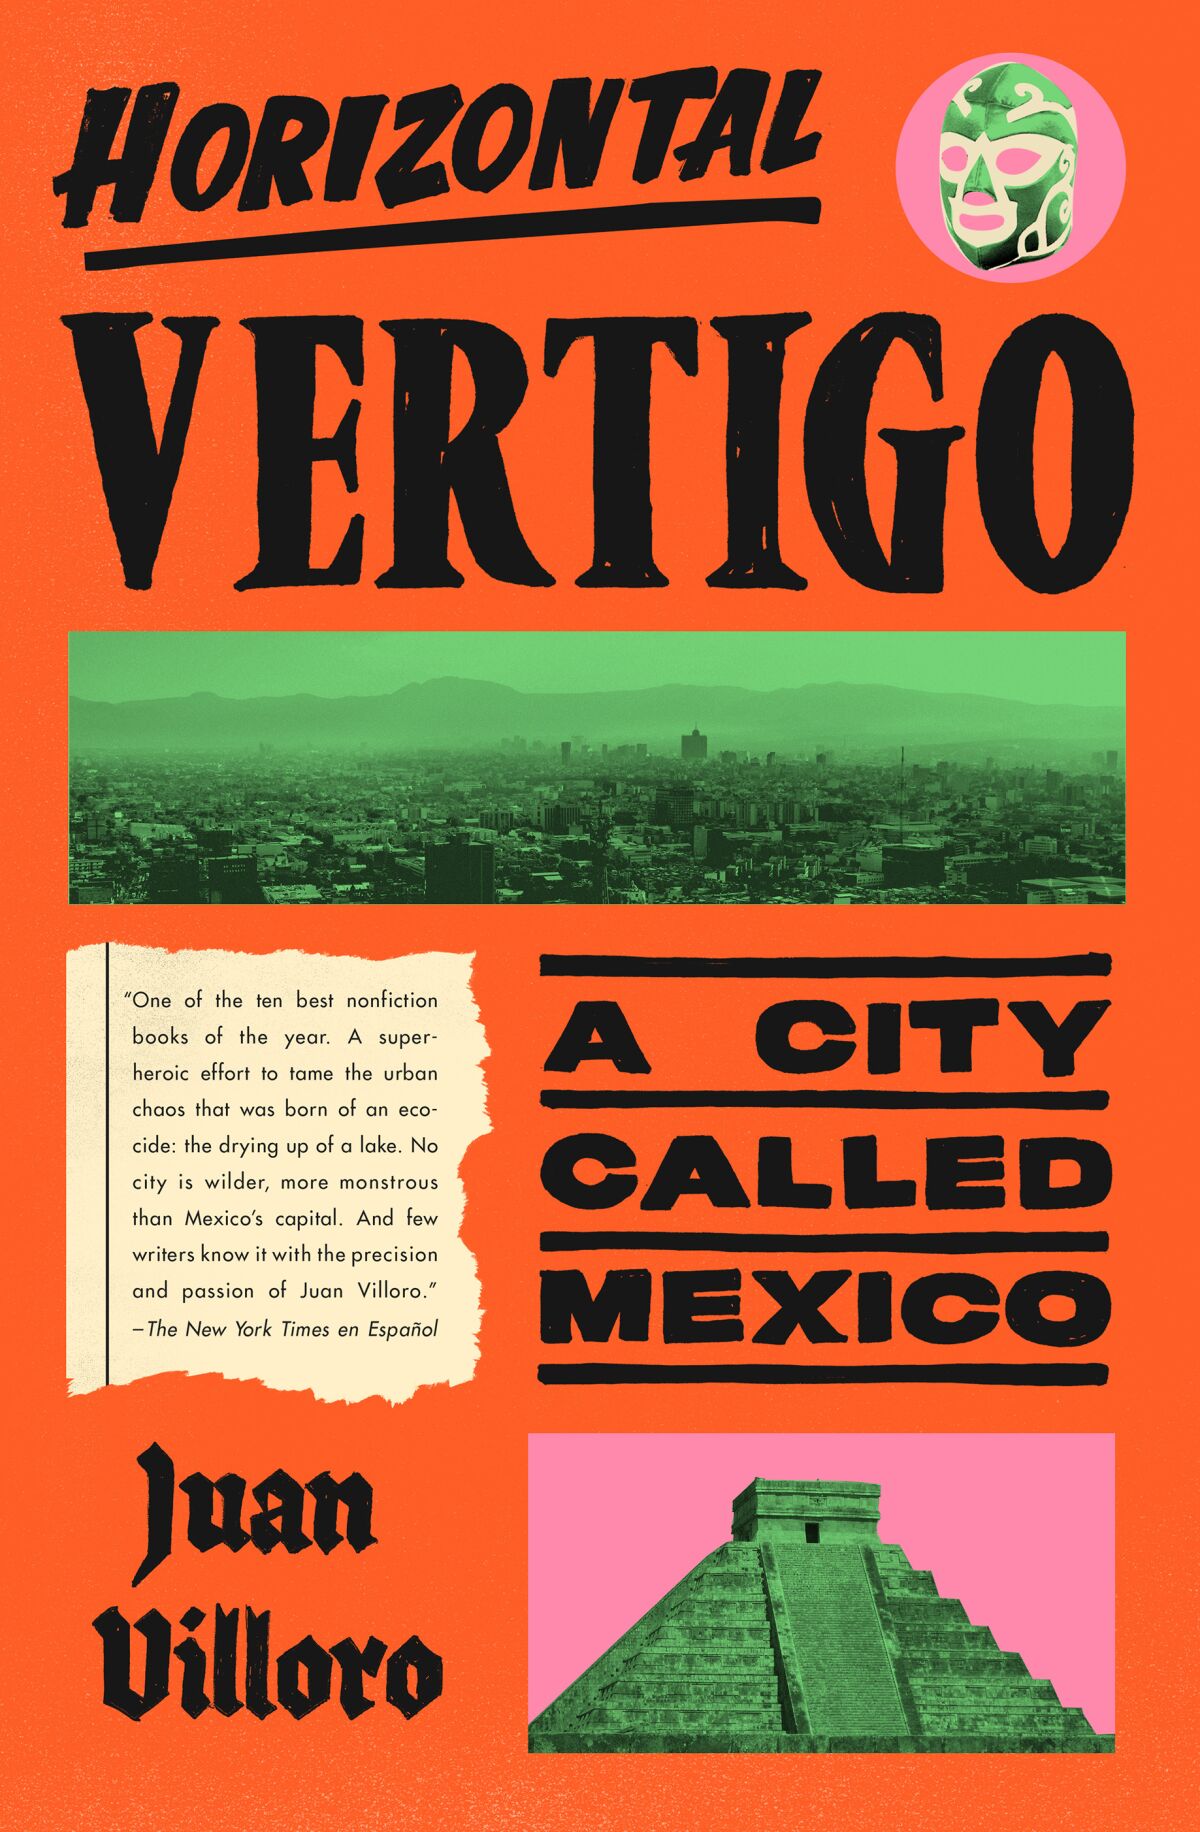 The cover of "Horizontal Vertigo," by Juan Villoro.